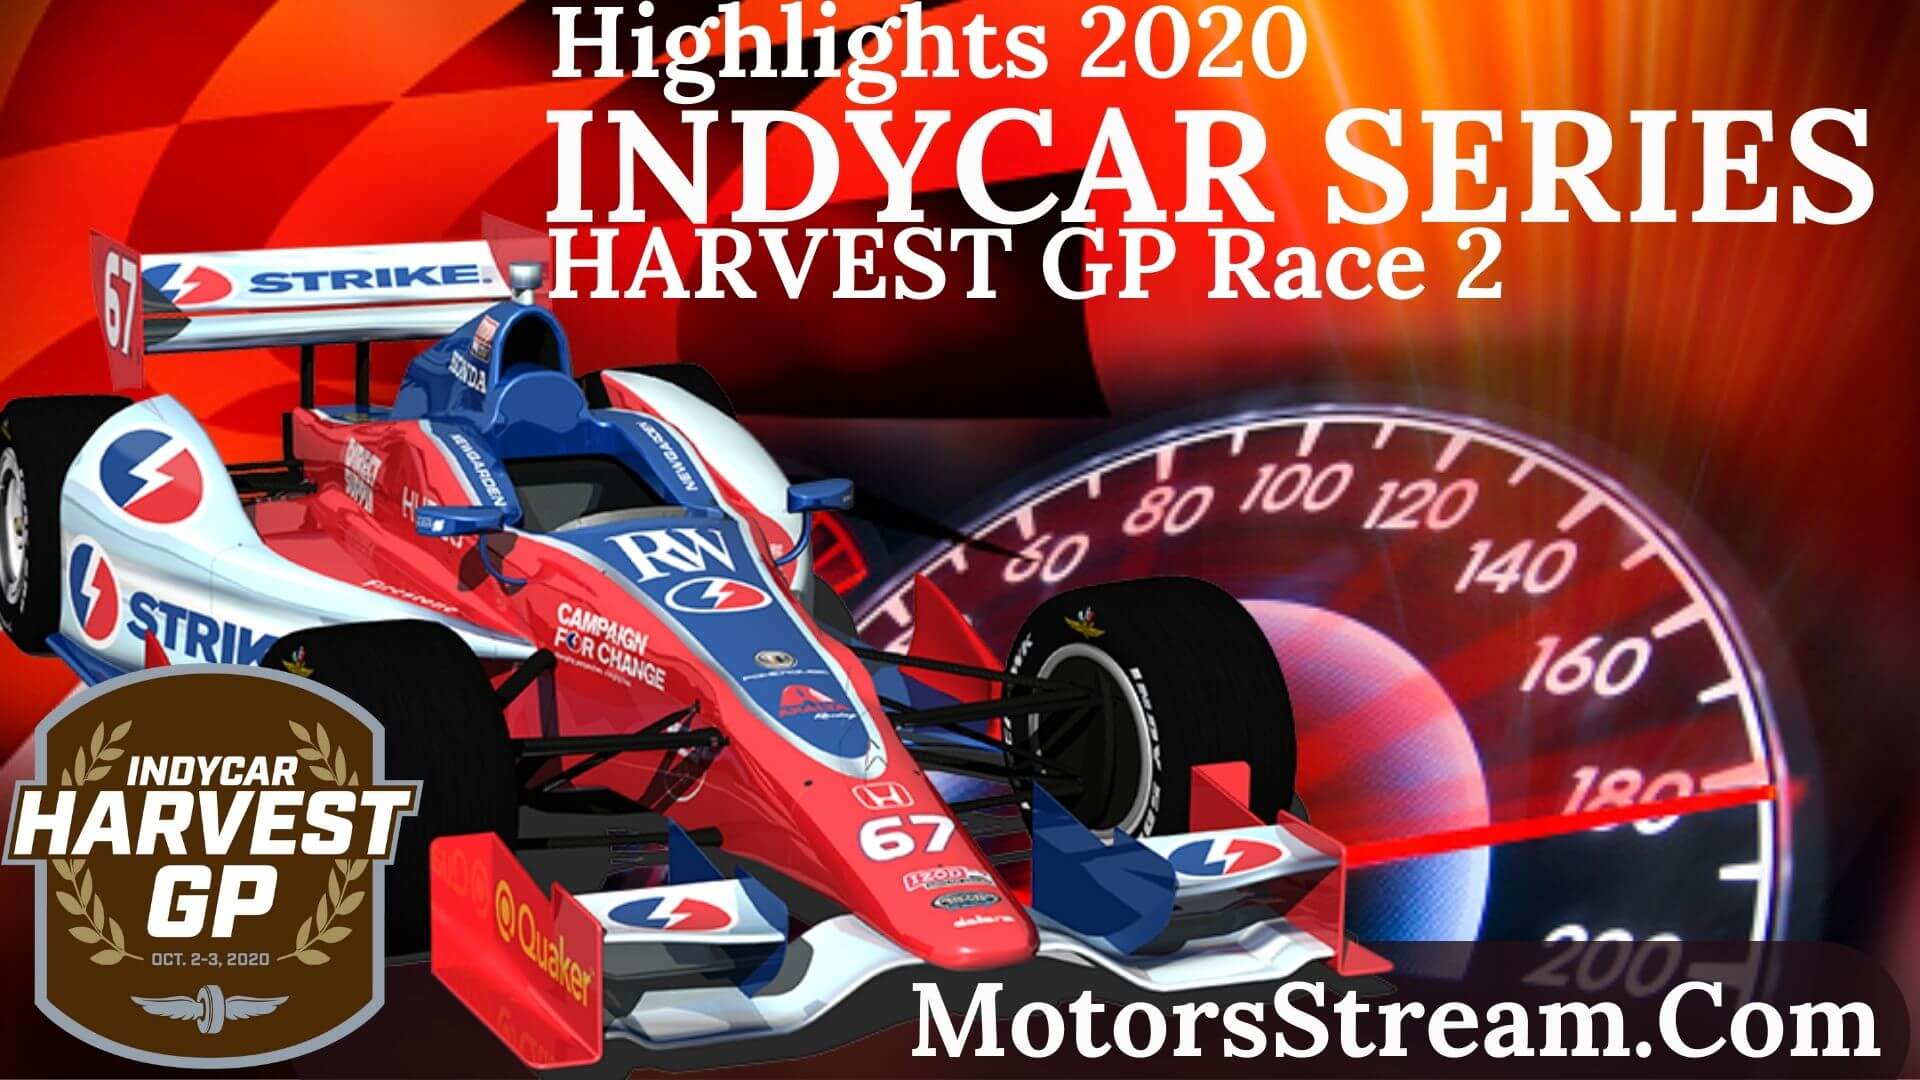 INDYCAR Harvest GP Race 2 Highlights 2020